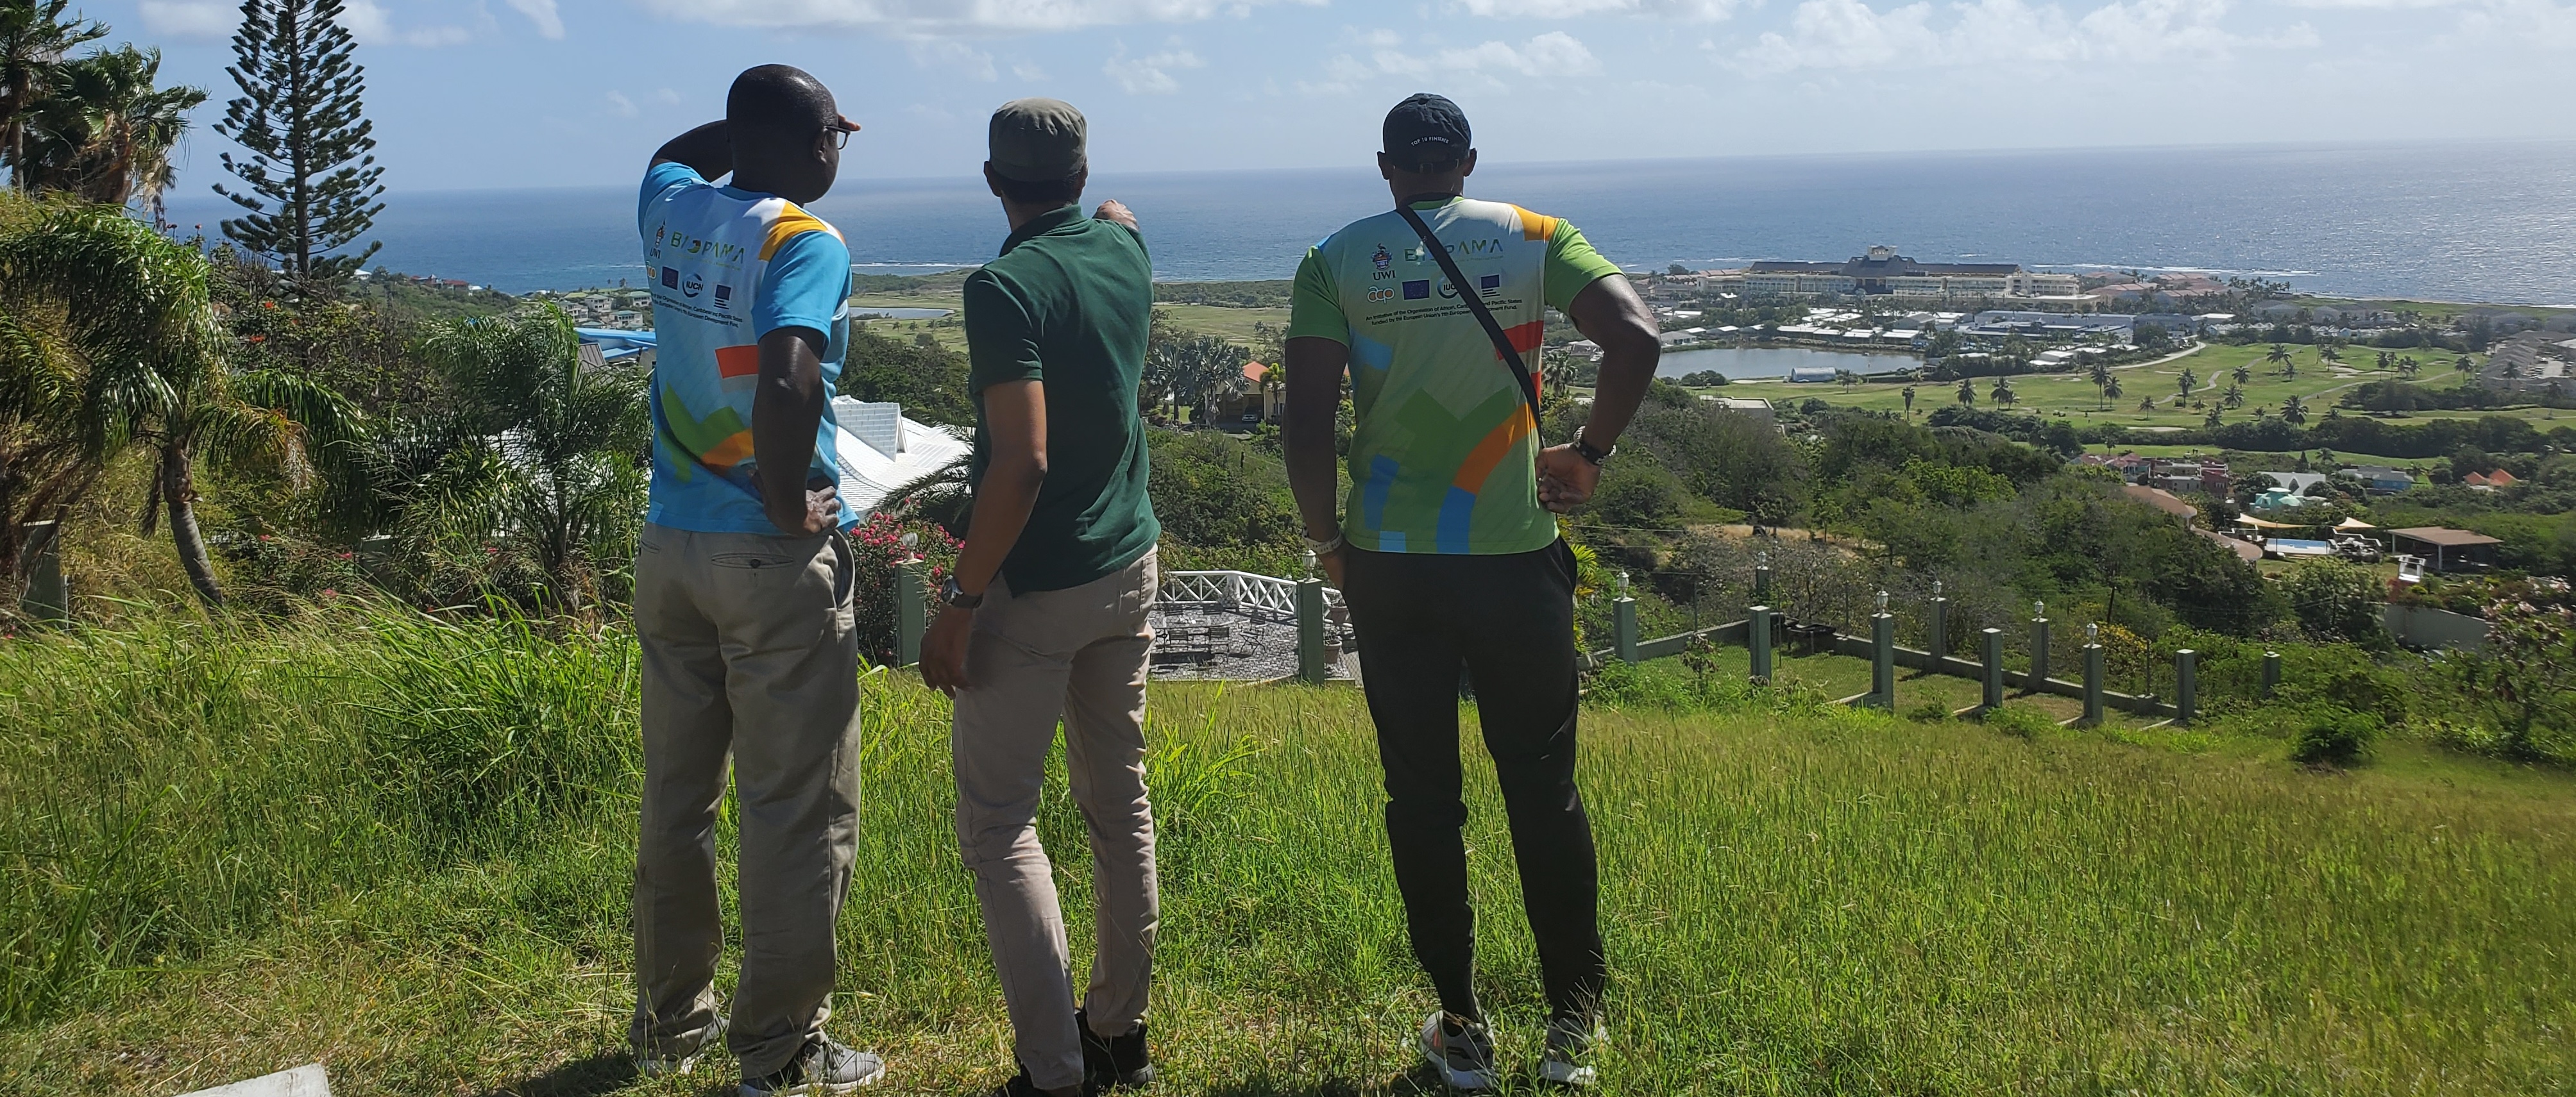 Members of CPAG team in St. Kitts